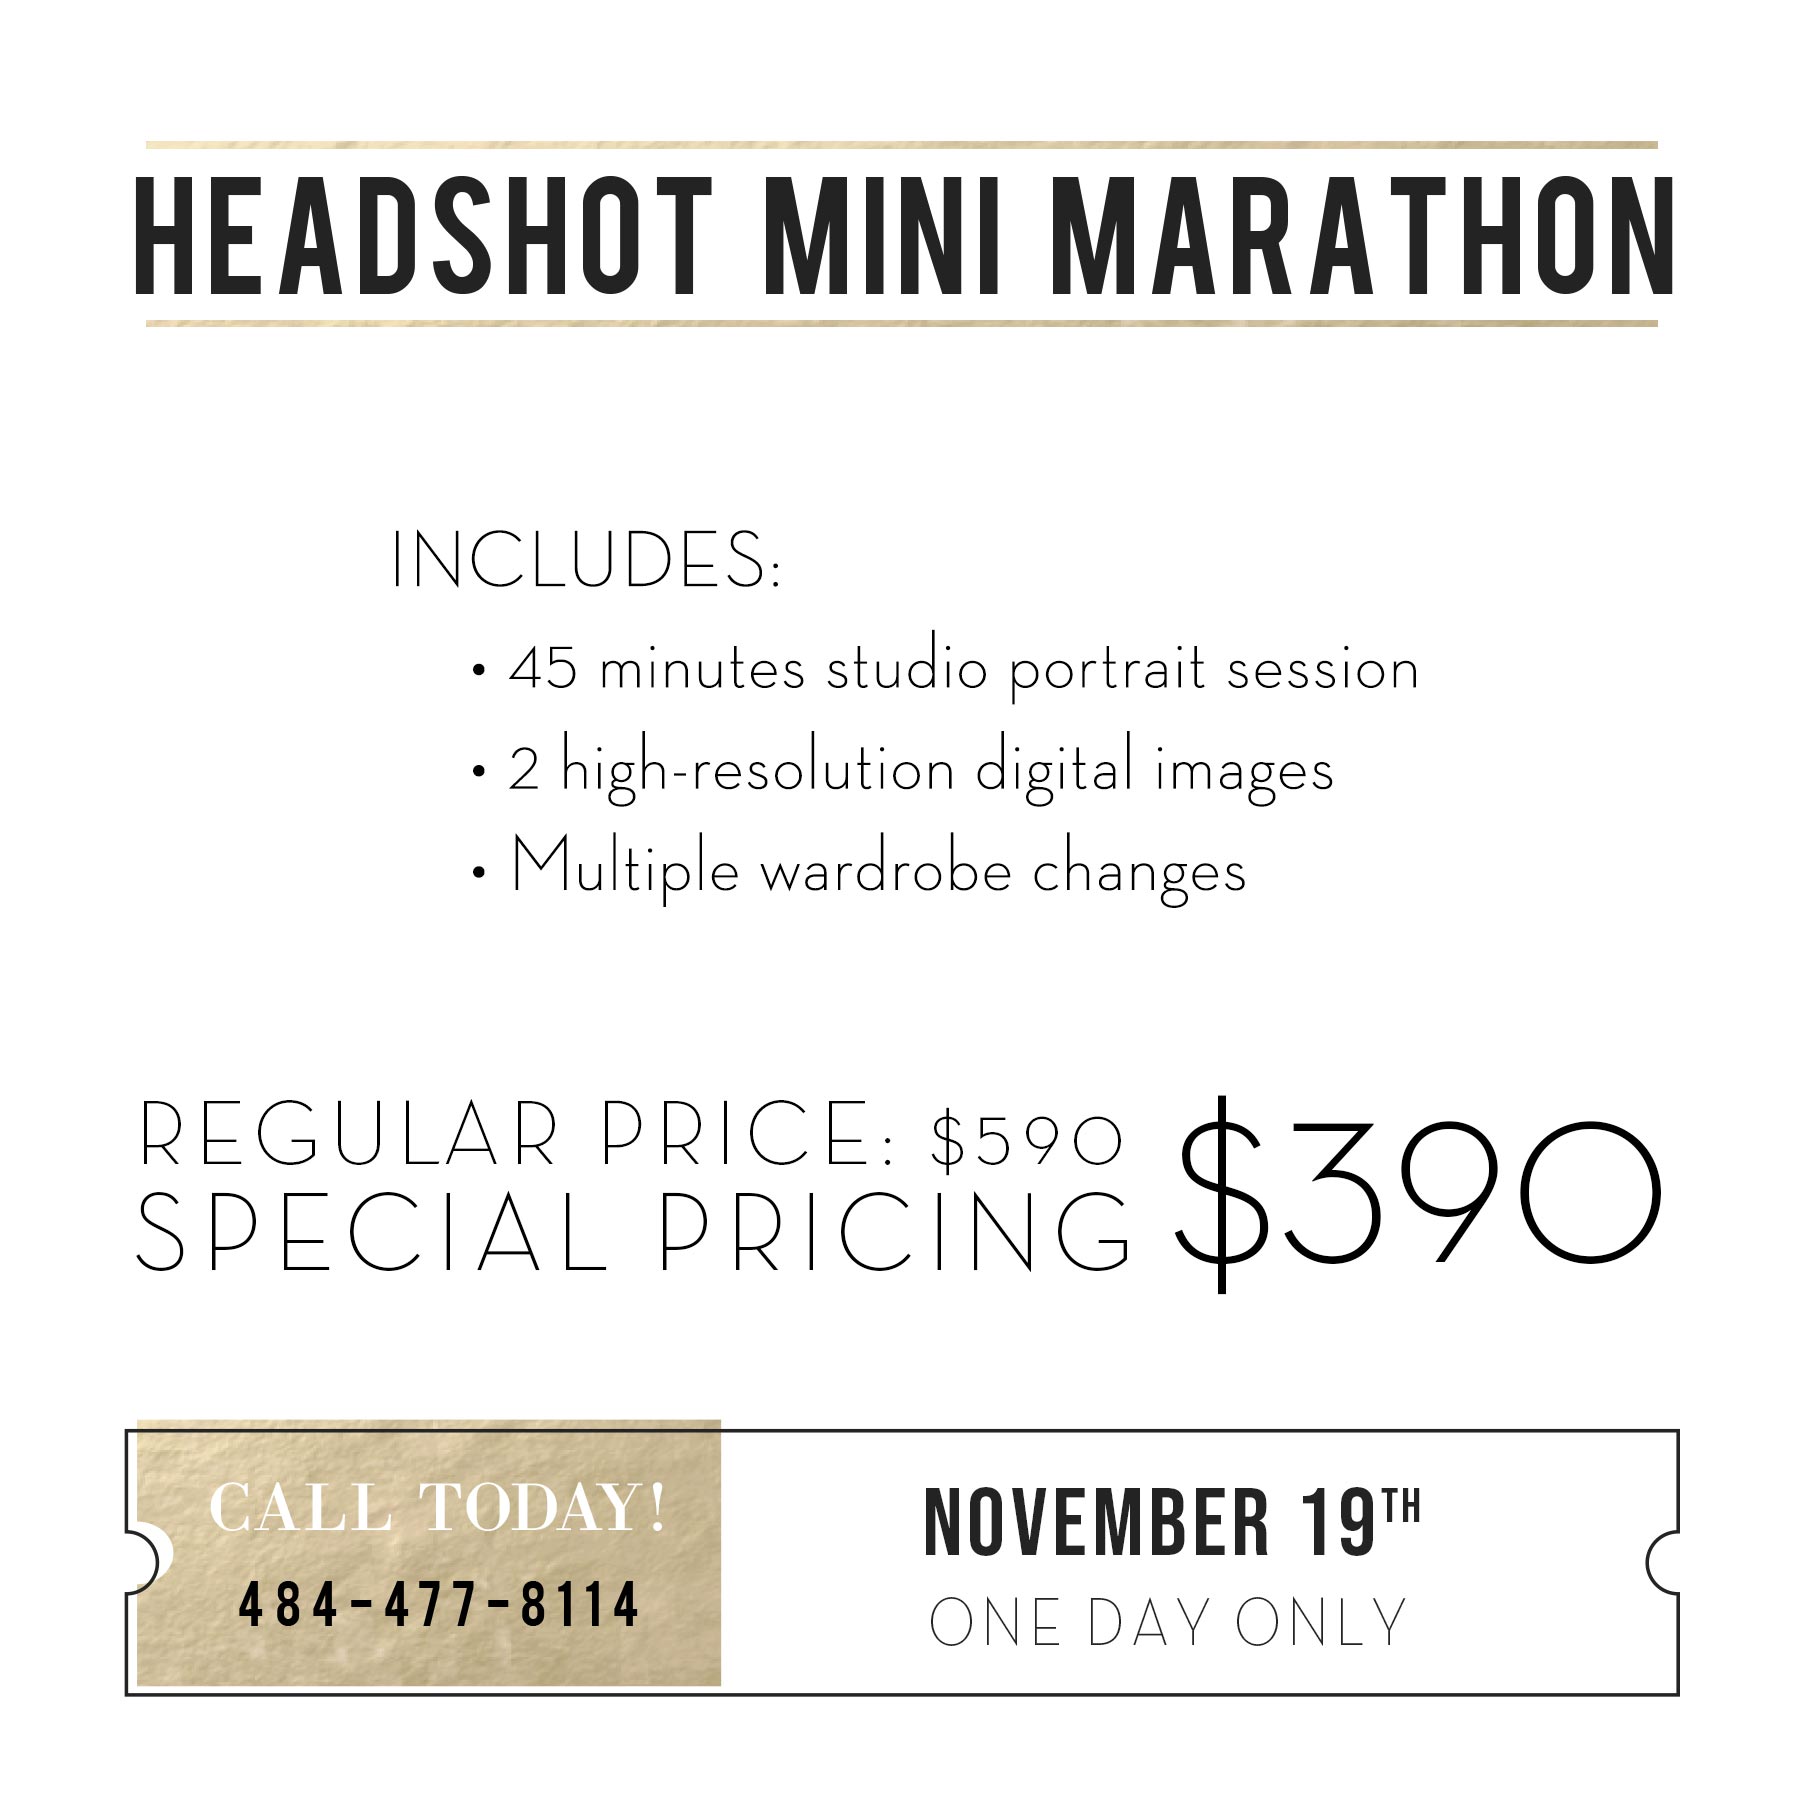 Headshot marathon details